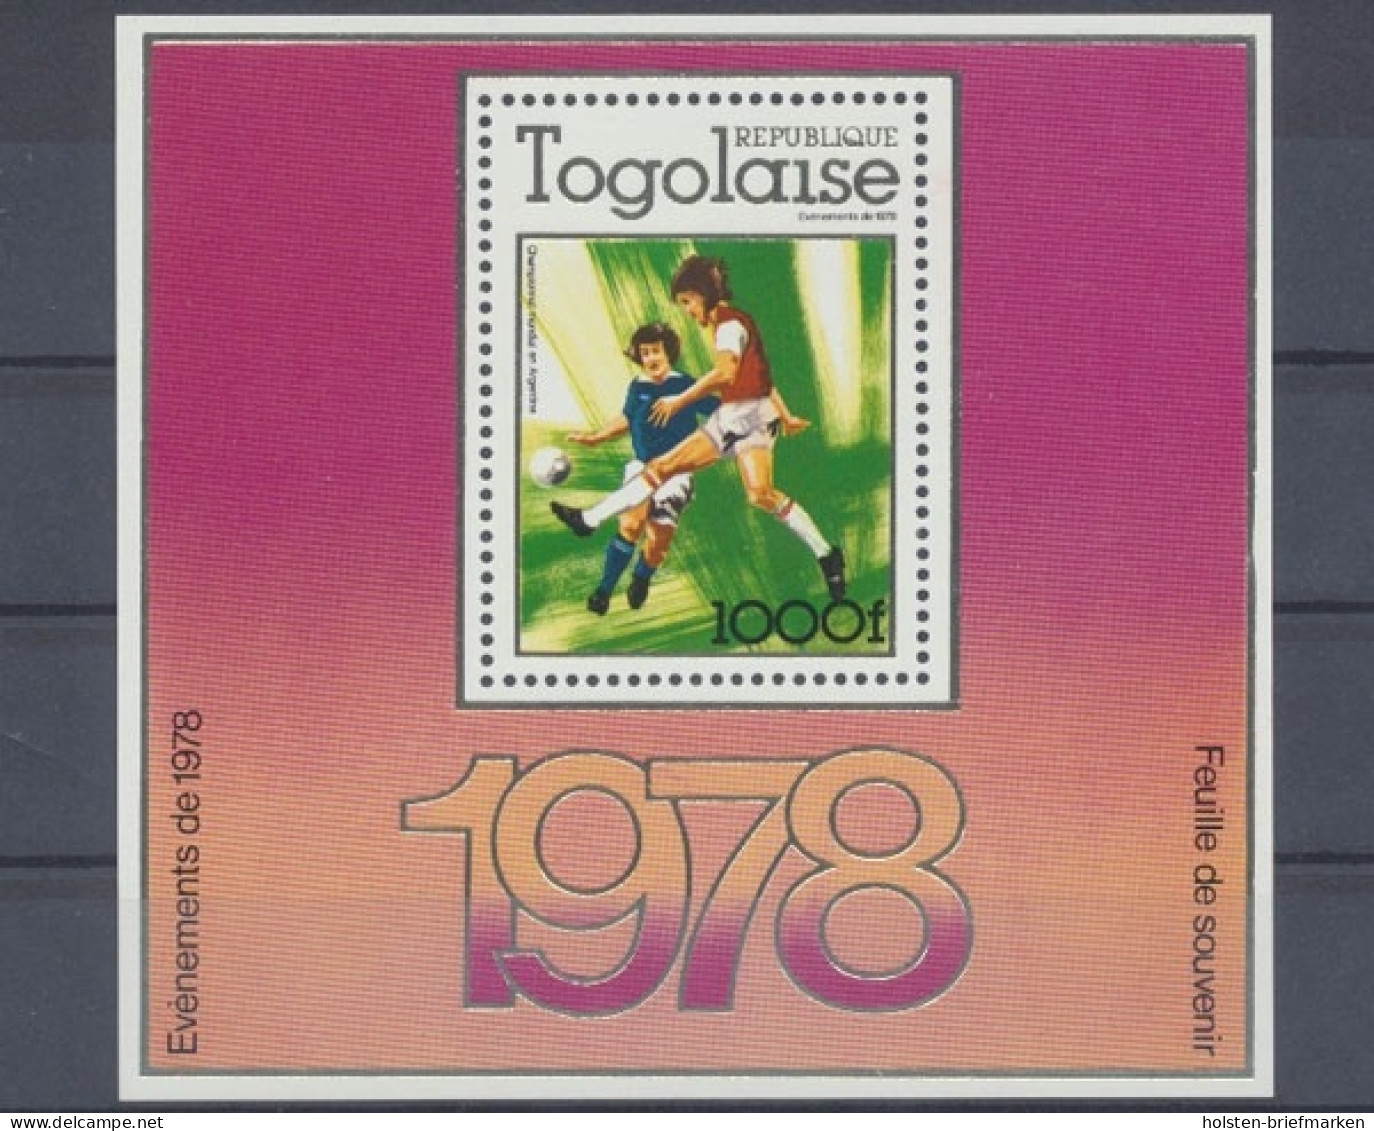 Togo, Fußball, MiNr. Bock 128 A, Postfrisch - Togo (1960-...)